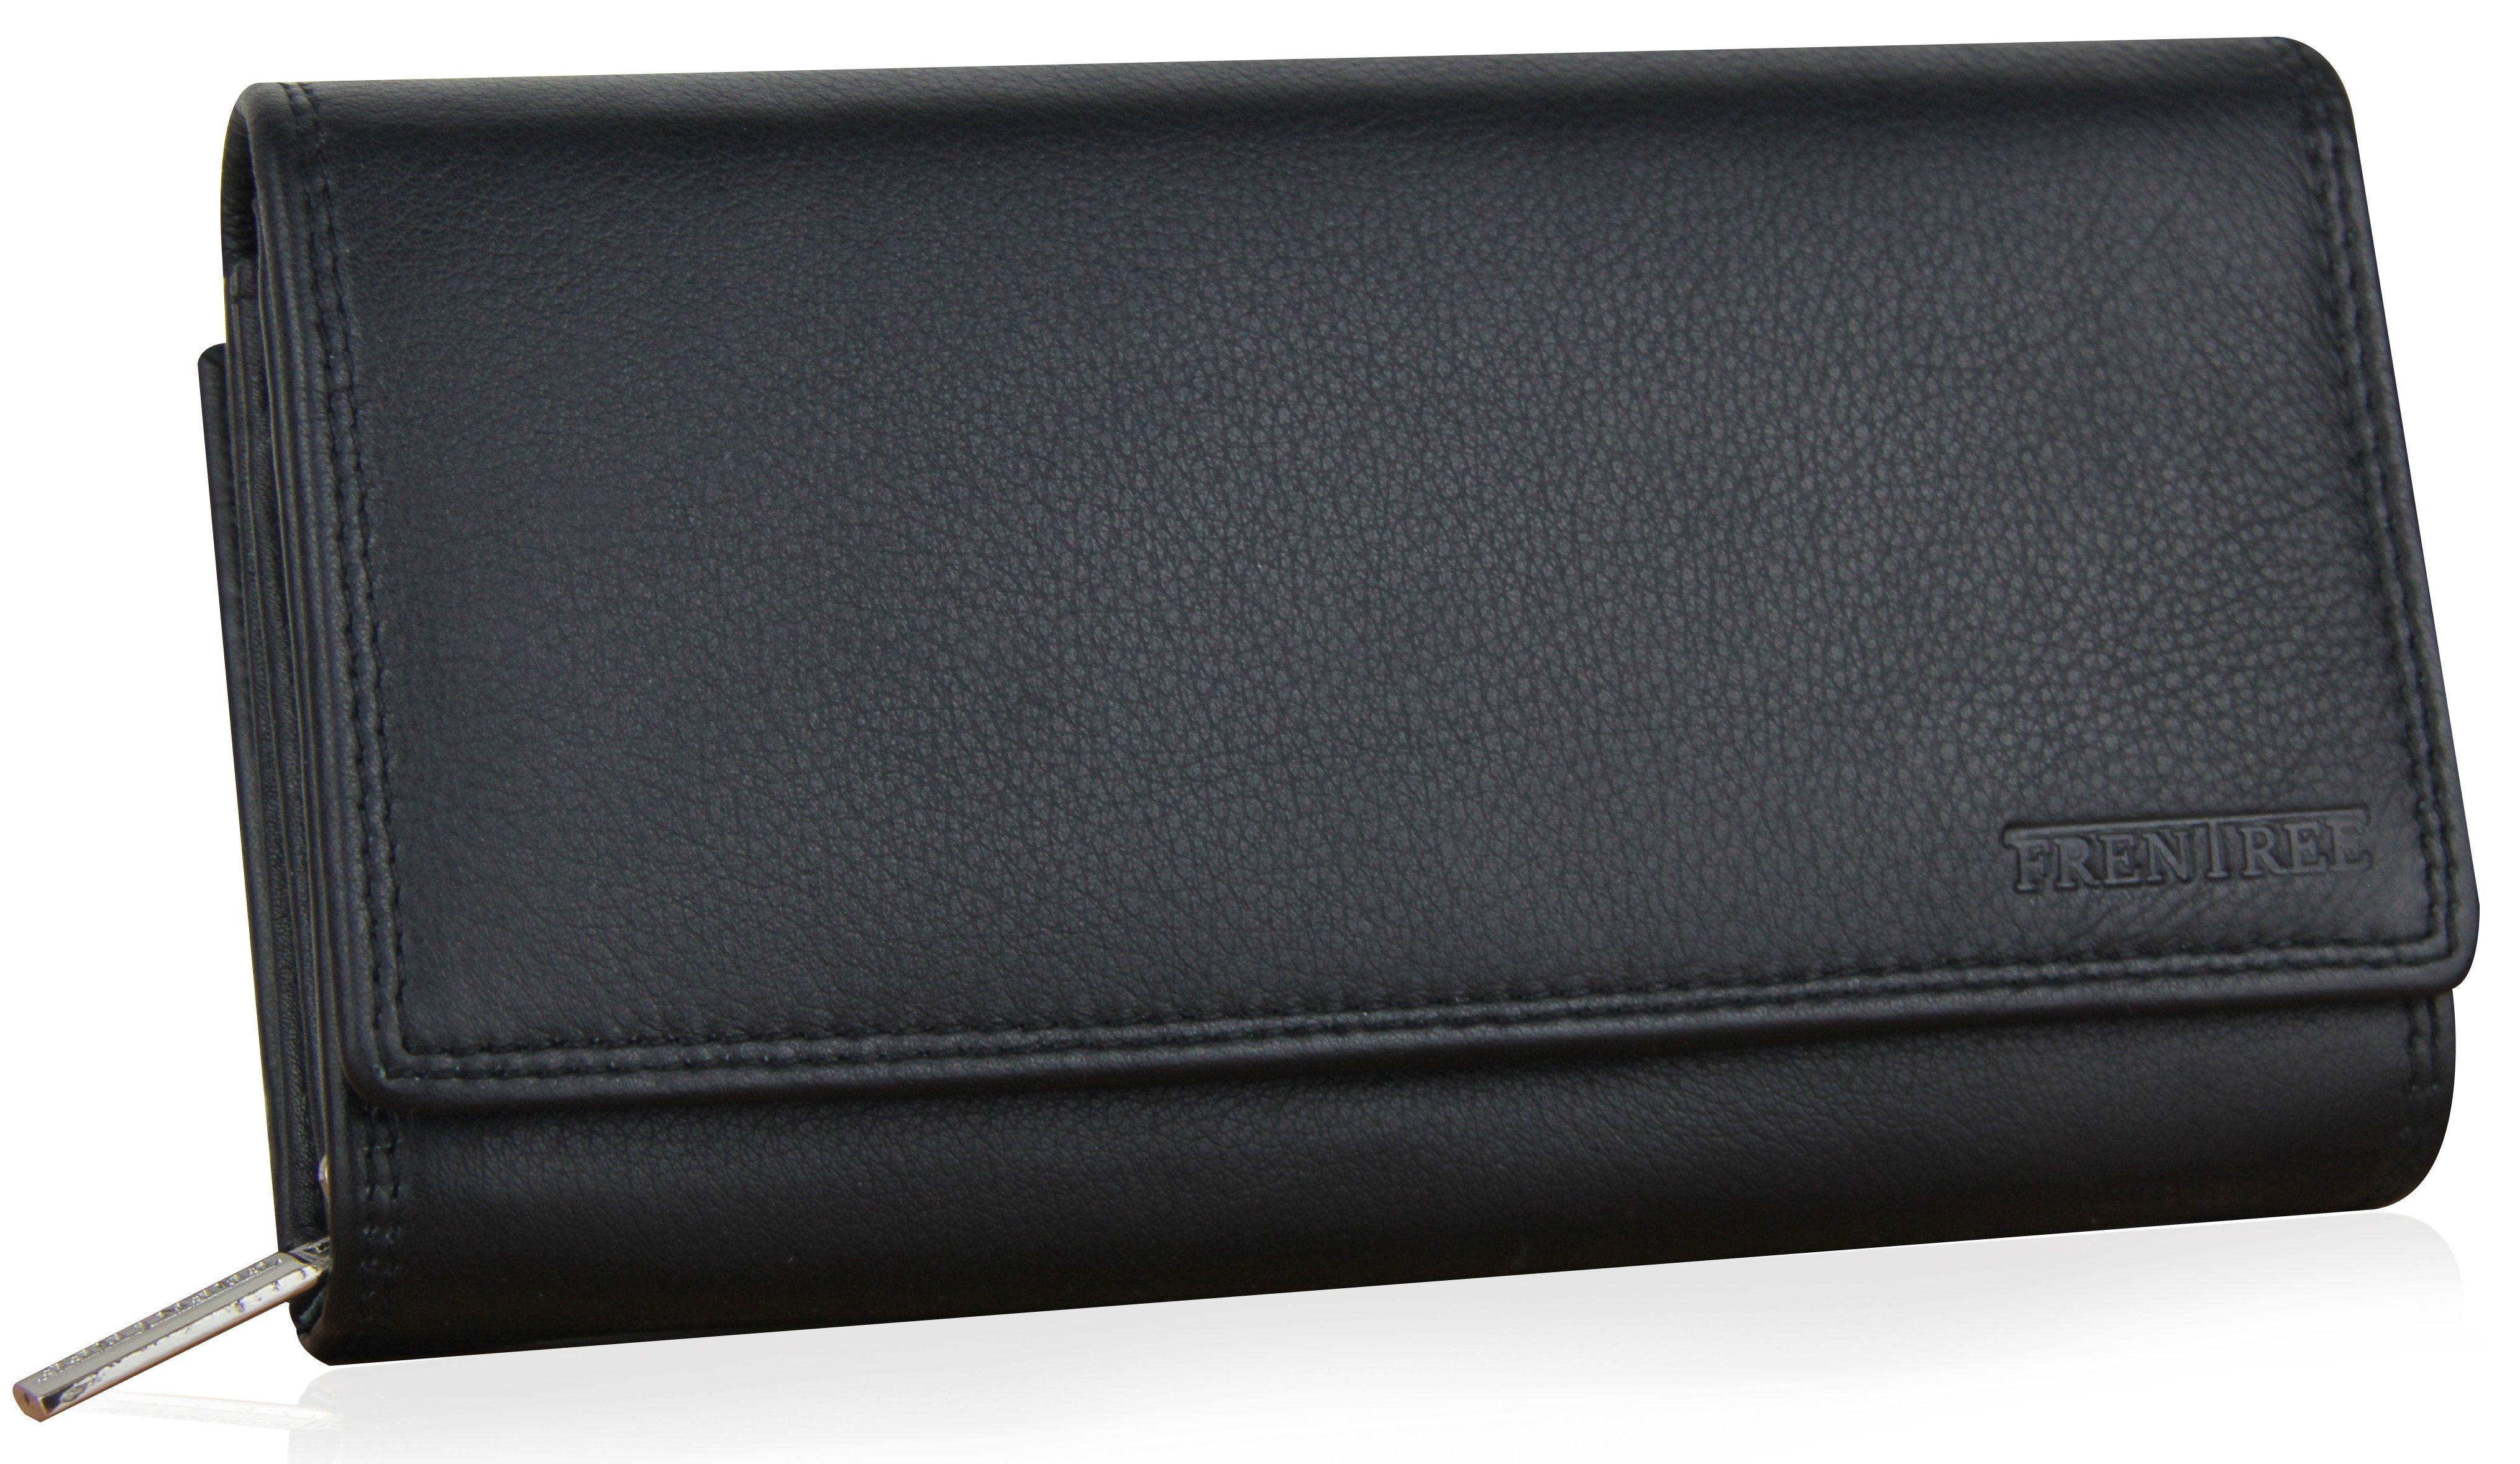 Frentree Geldbörse Damen Portemonnaie aus echtem Nappaleder mit vielen Fächern und, und RFID-Schutz, großes Echt Leder Portemonnaie Schwarz